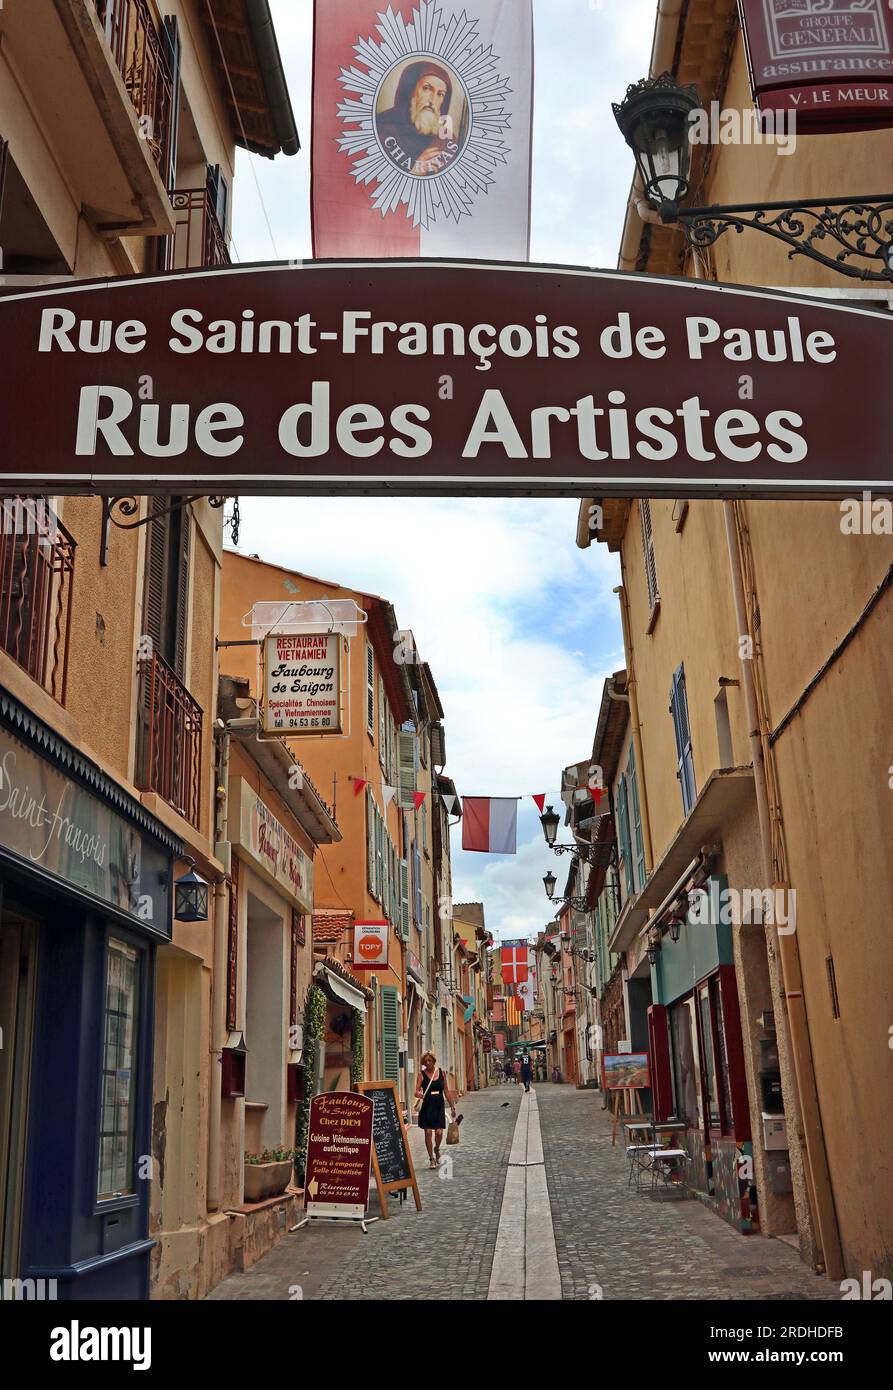 Rue des Artistes nella vecchia Fréjus - una delle strade artistiche laterali con gallerie e negozi della gente del posto - nel vecchio centro storico. VAR, Côte Azzurra Foto Stock